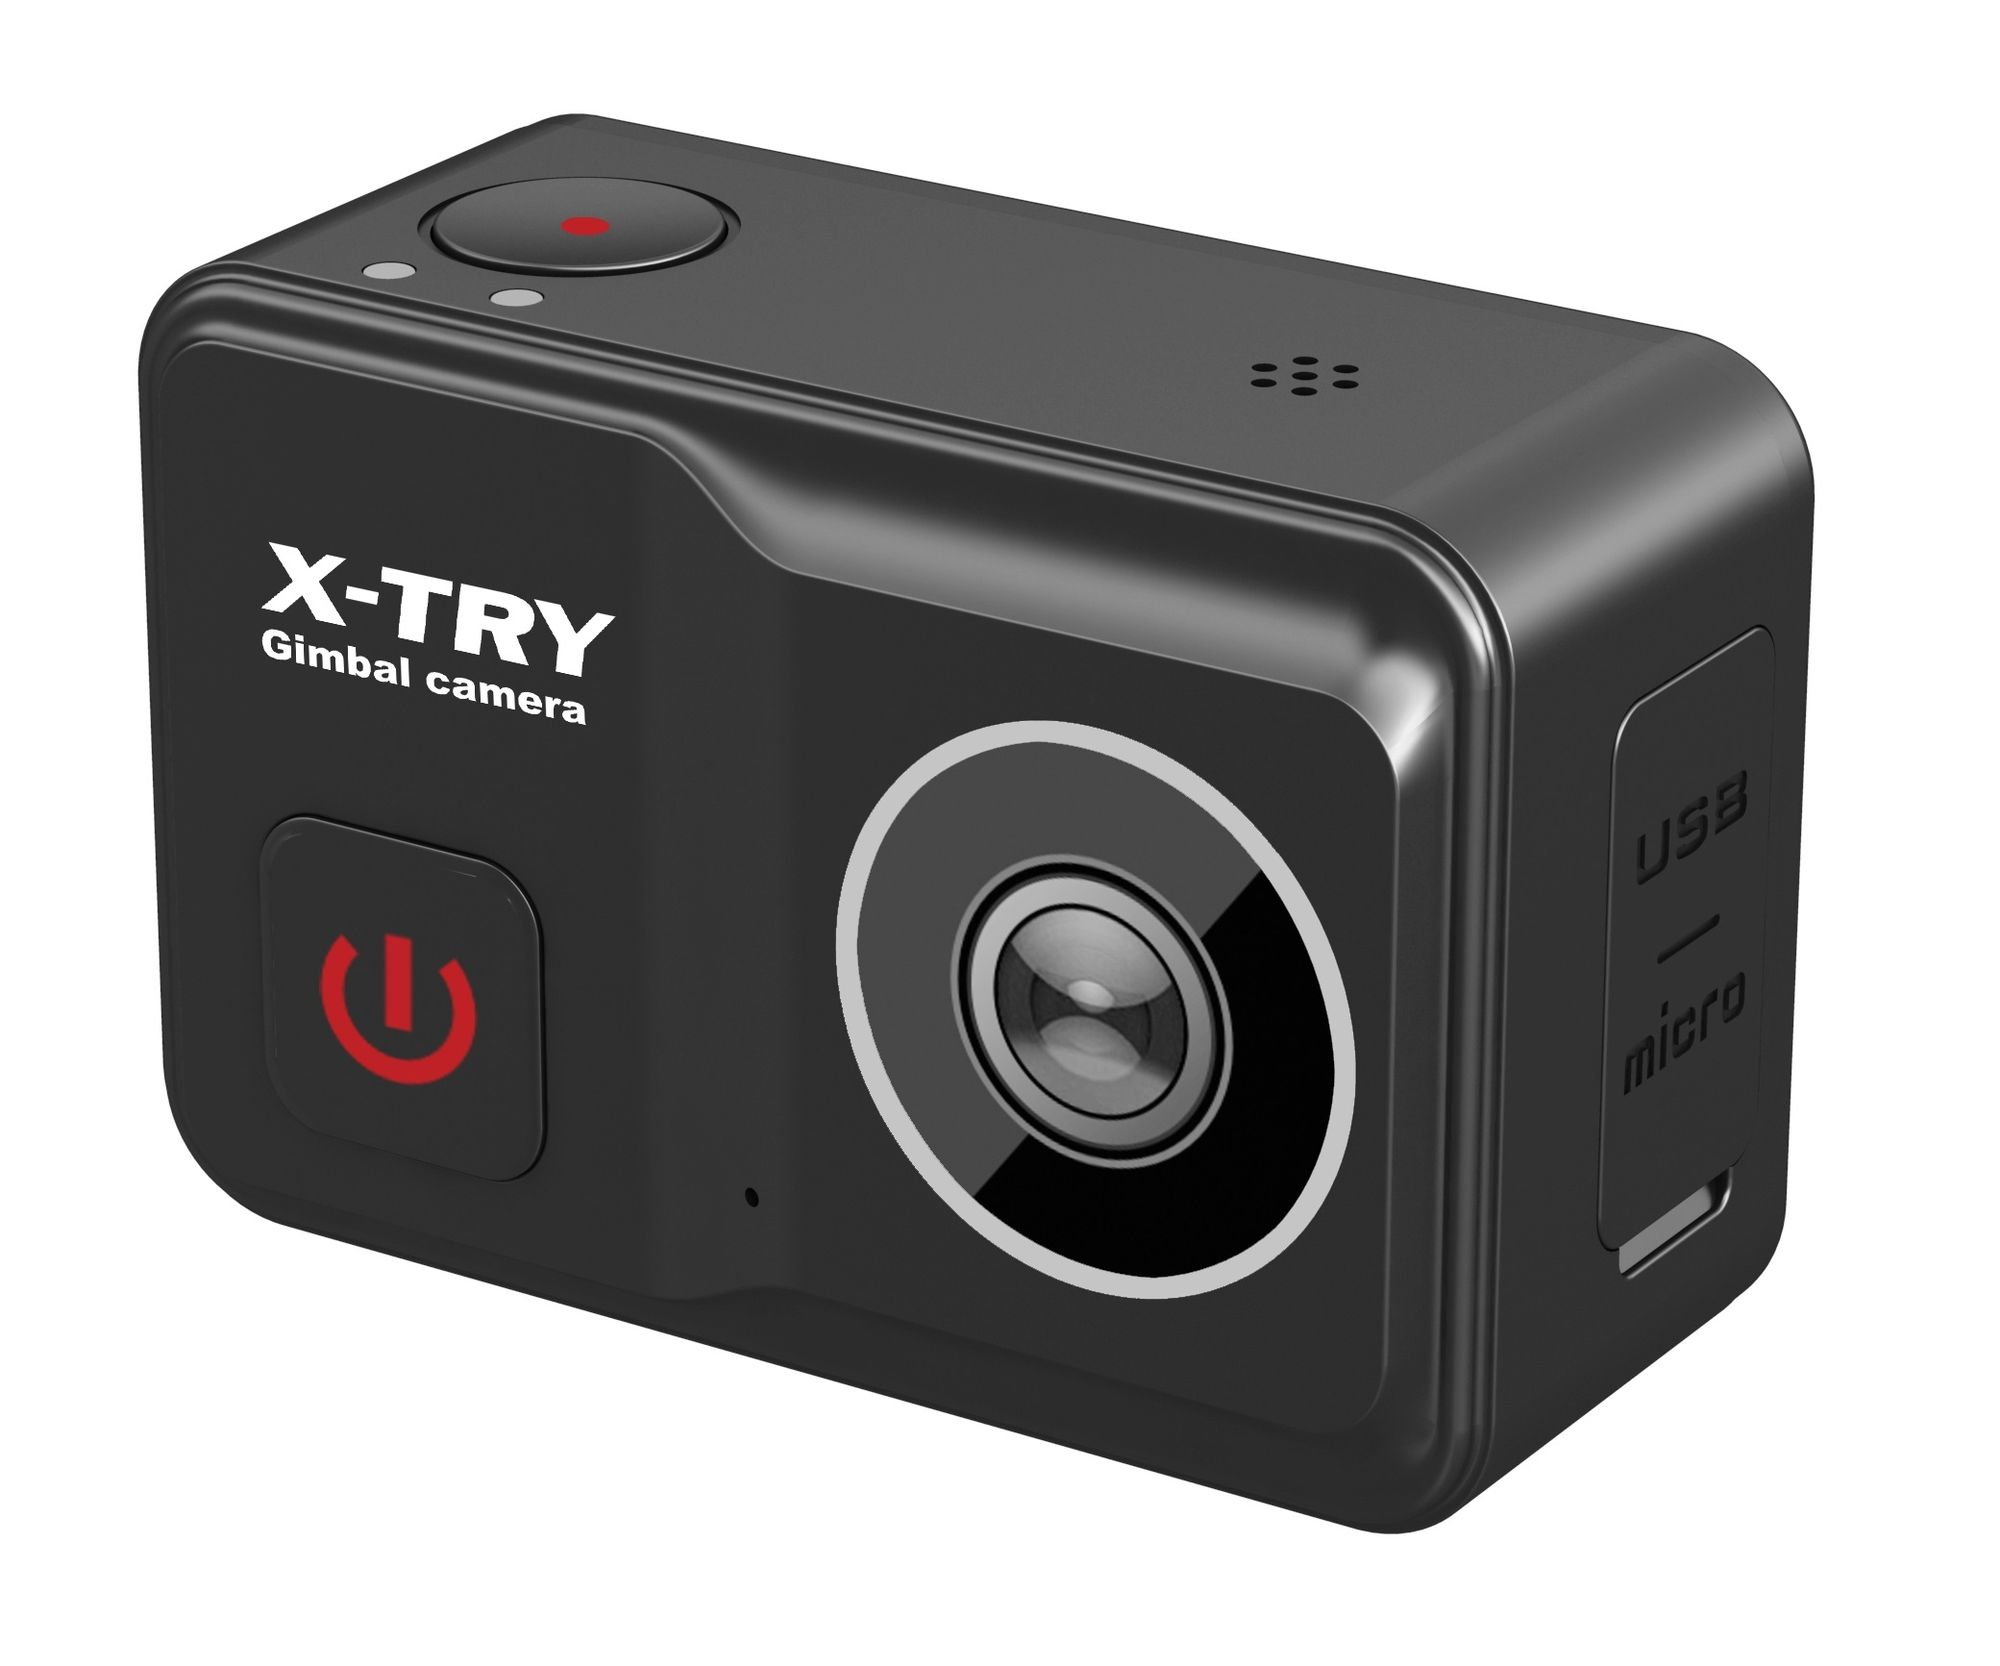 Экшн камера X-Try XTC502 Gimbal Real 4K/60FPS WDR Wi-Fi Power экшн камера x try xtc260 real 4k wi fi standart